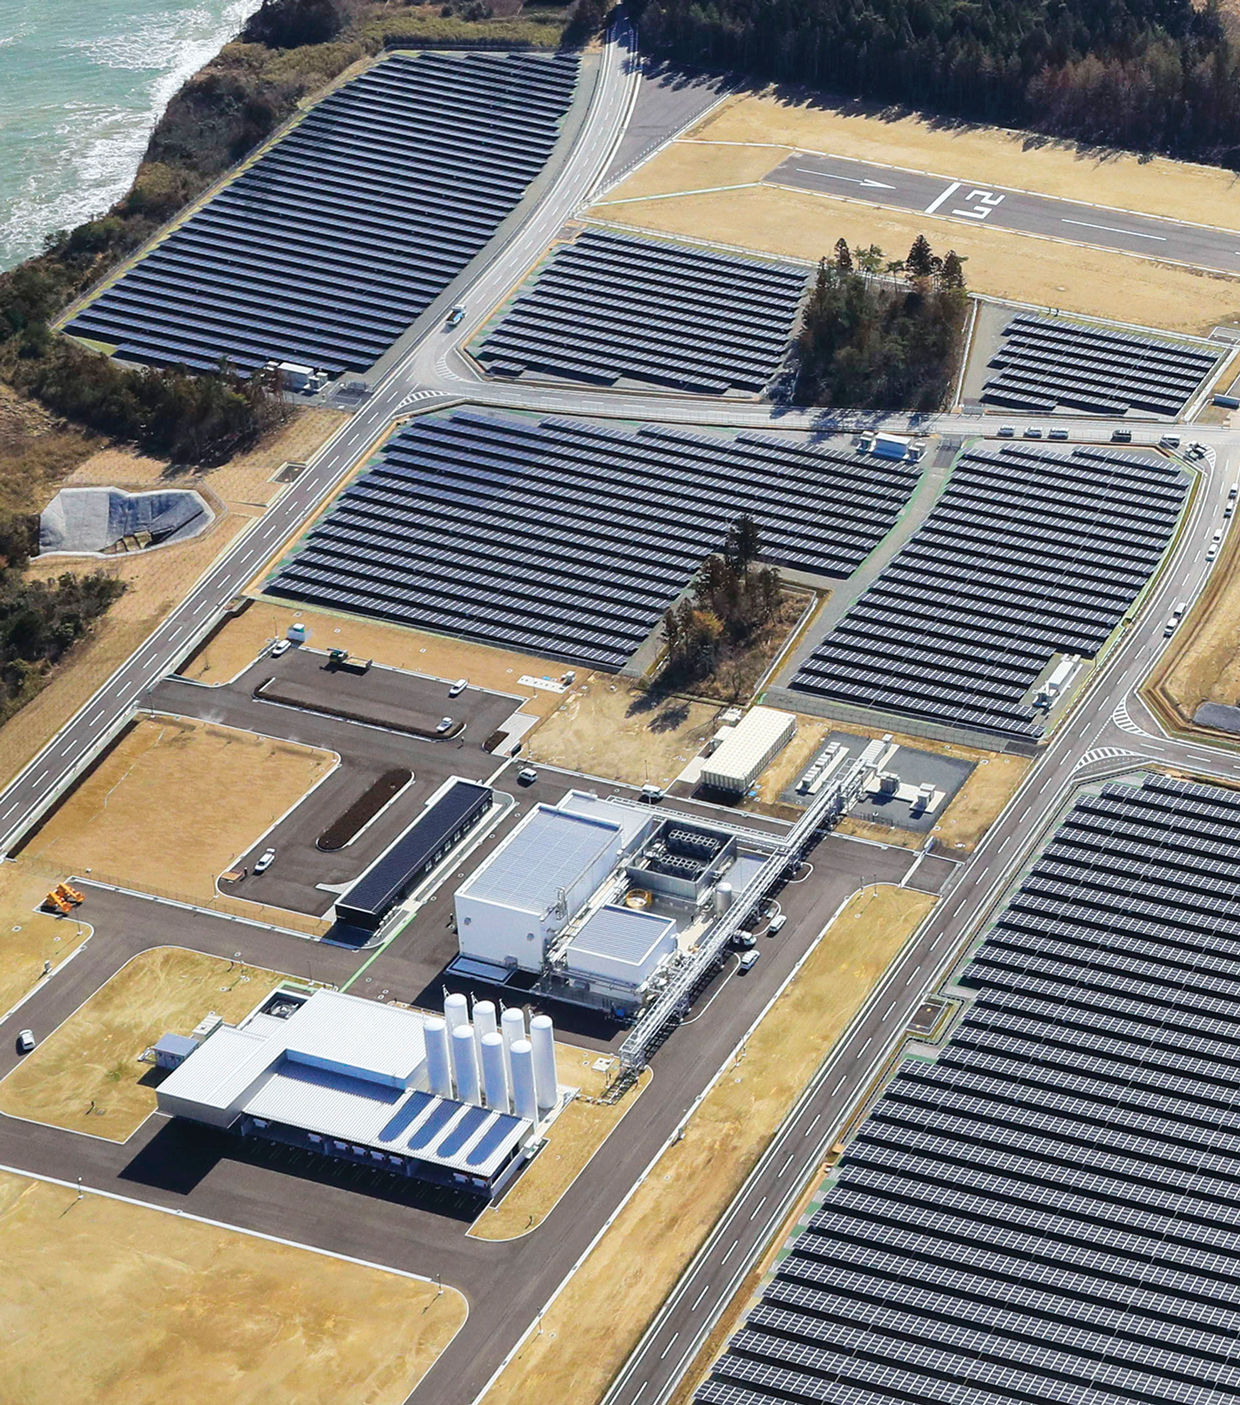 водородный завод и центр зеленой энергетики - исследовательское поле водородной энергетики Фукусимы